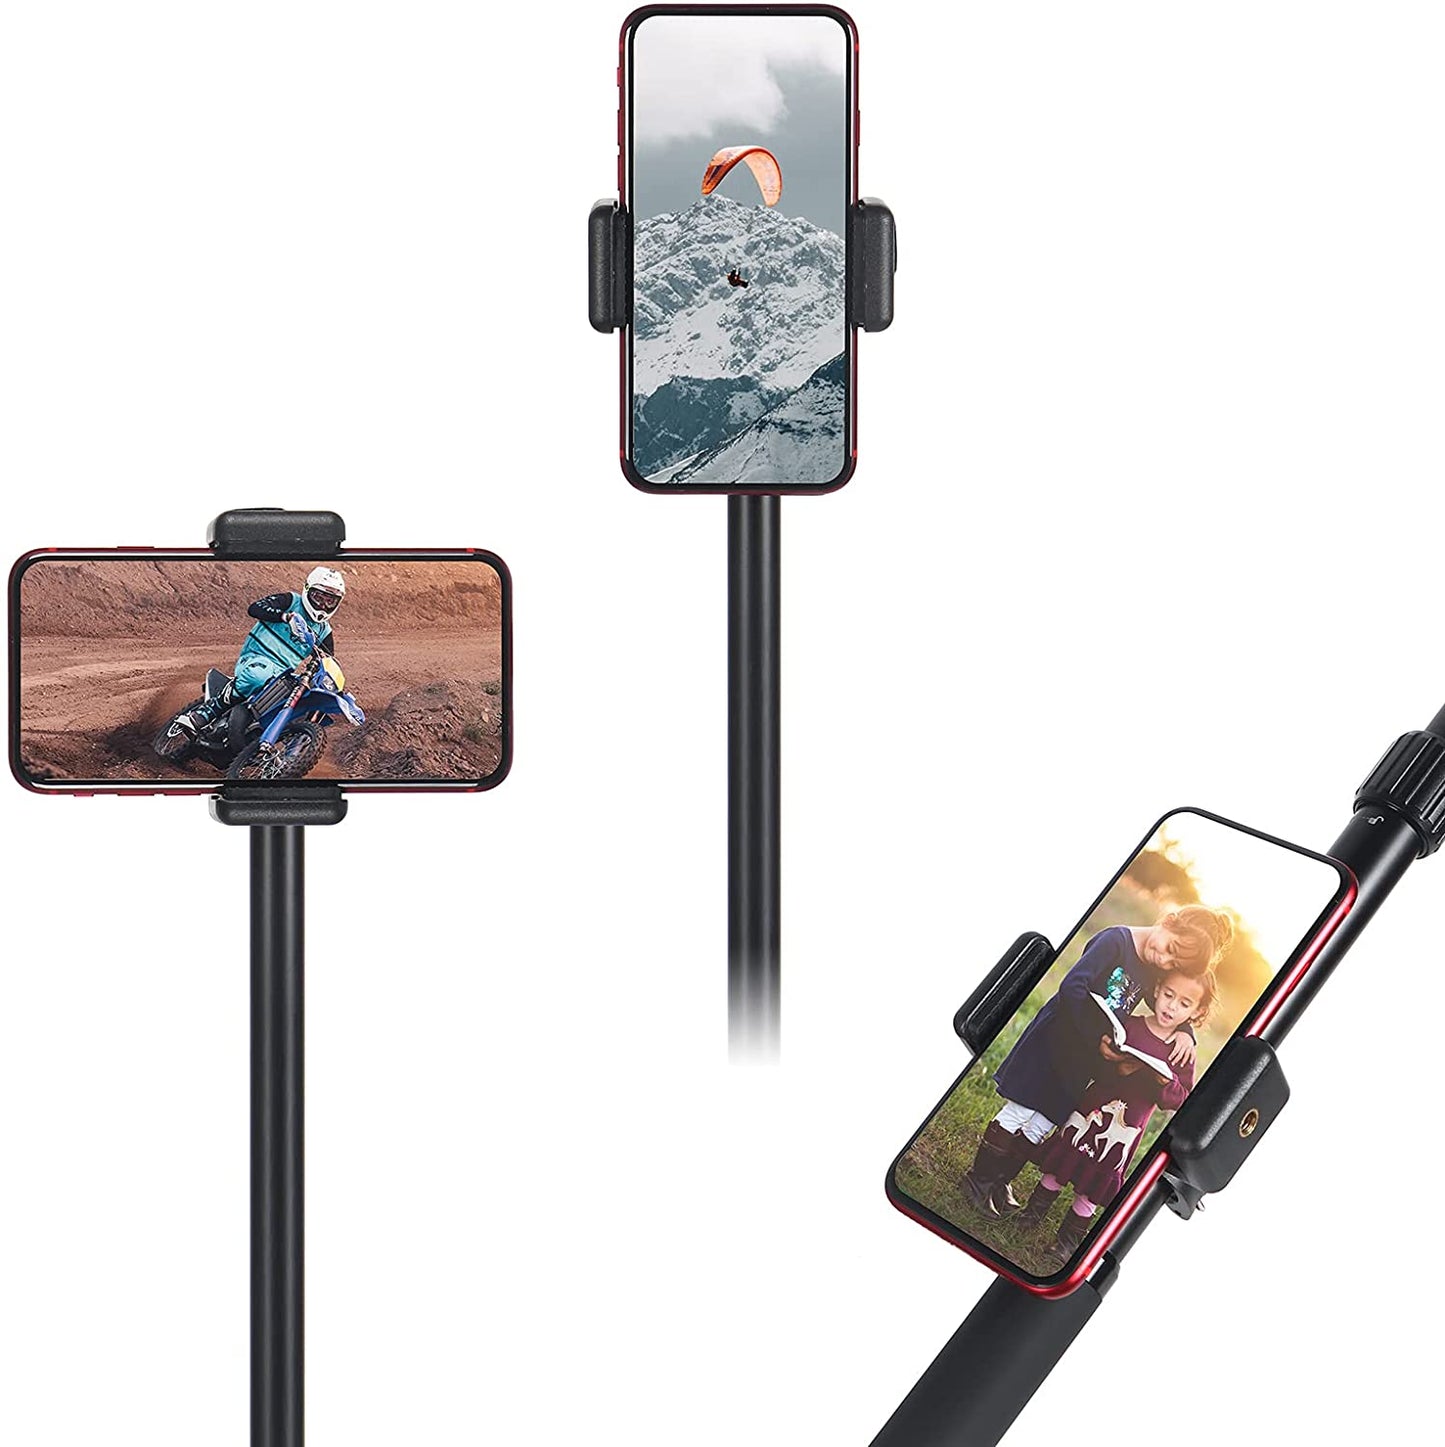 HSU Waterproof Adjustable Selfie Stick (14.8”-44.1”) for GoPro/Smartphone